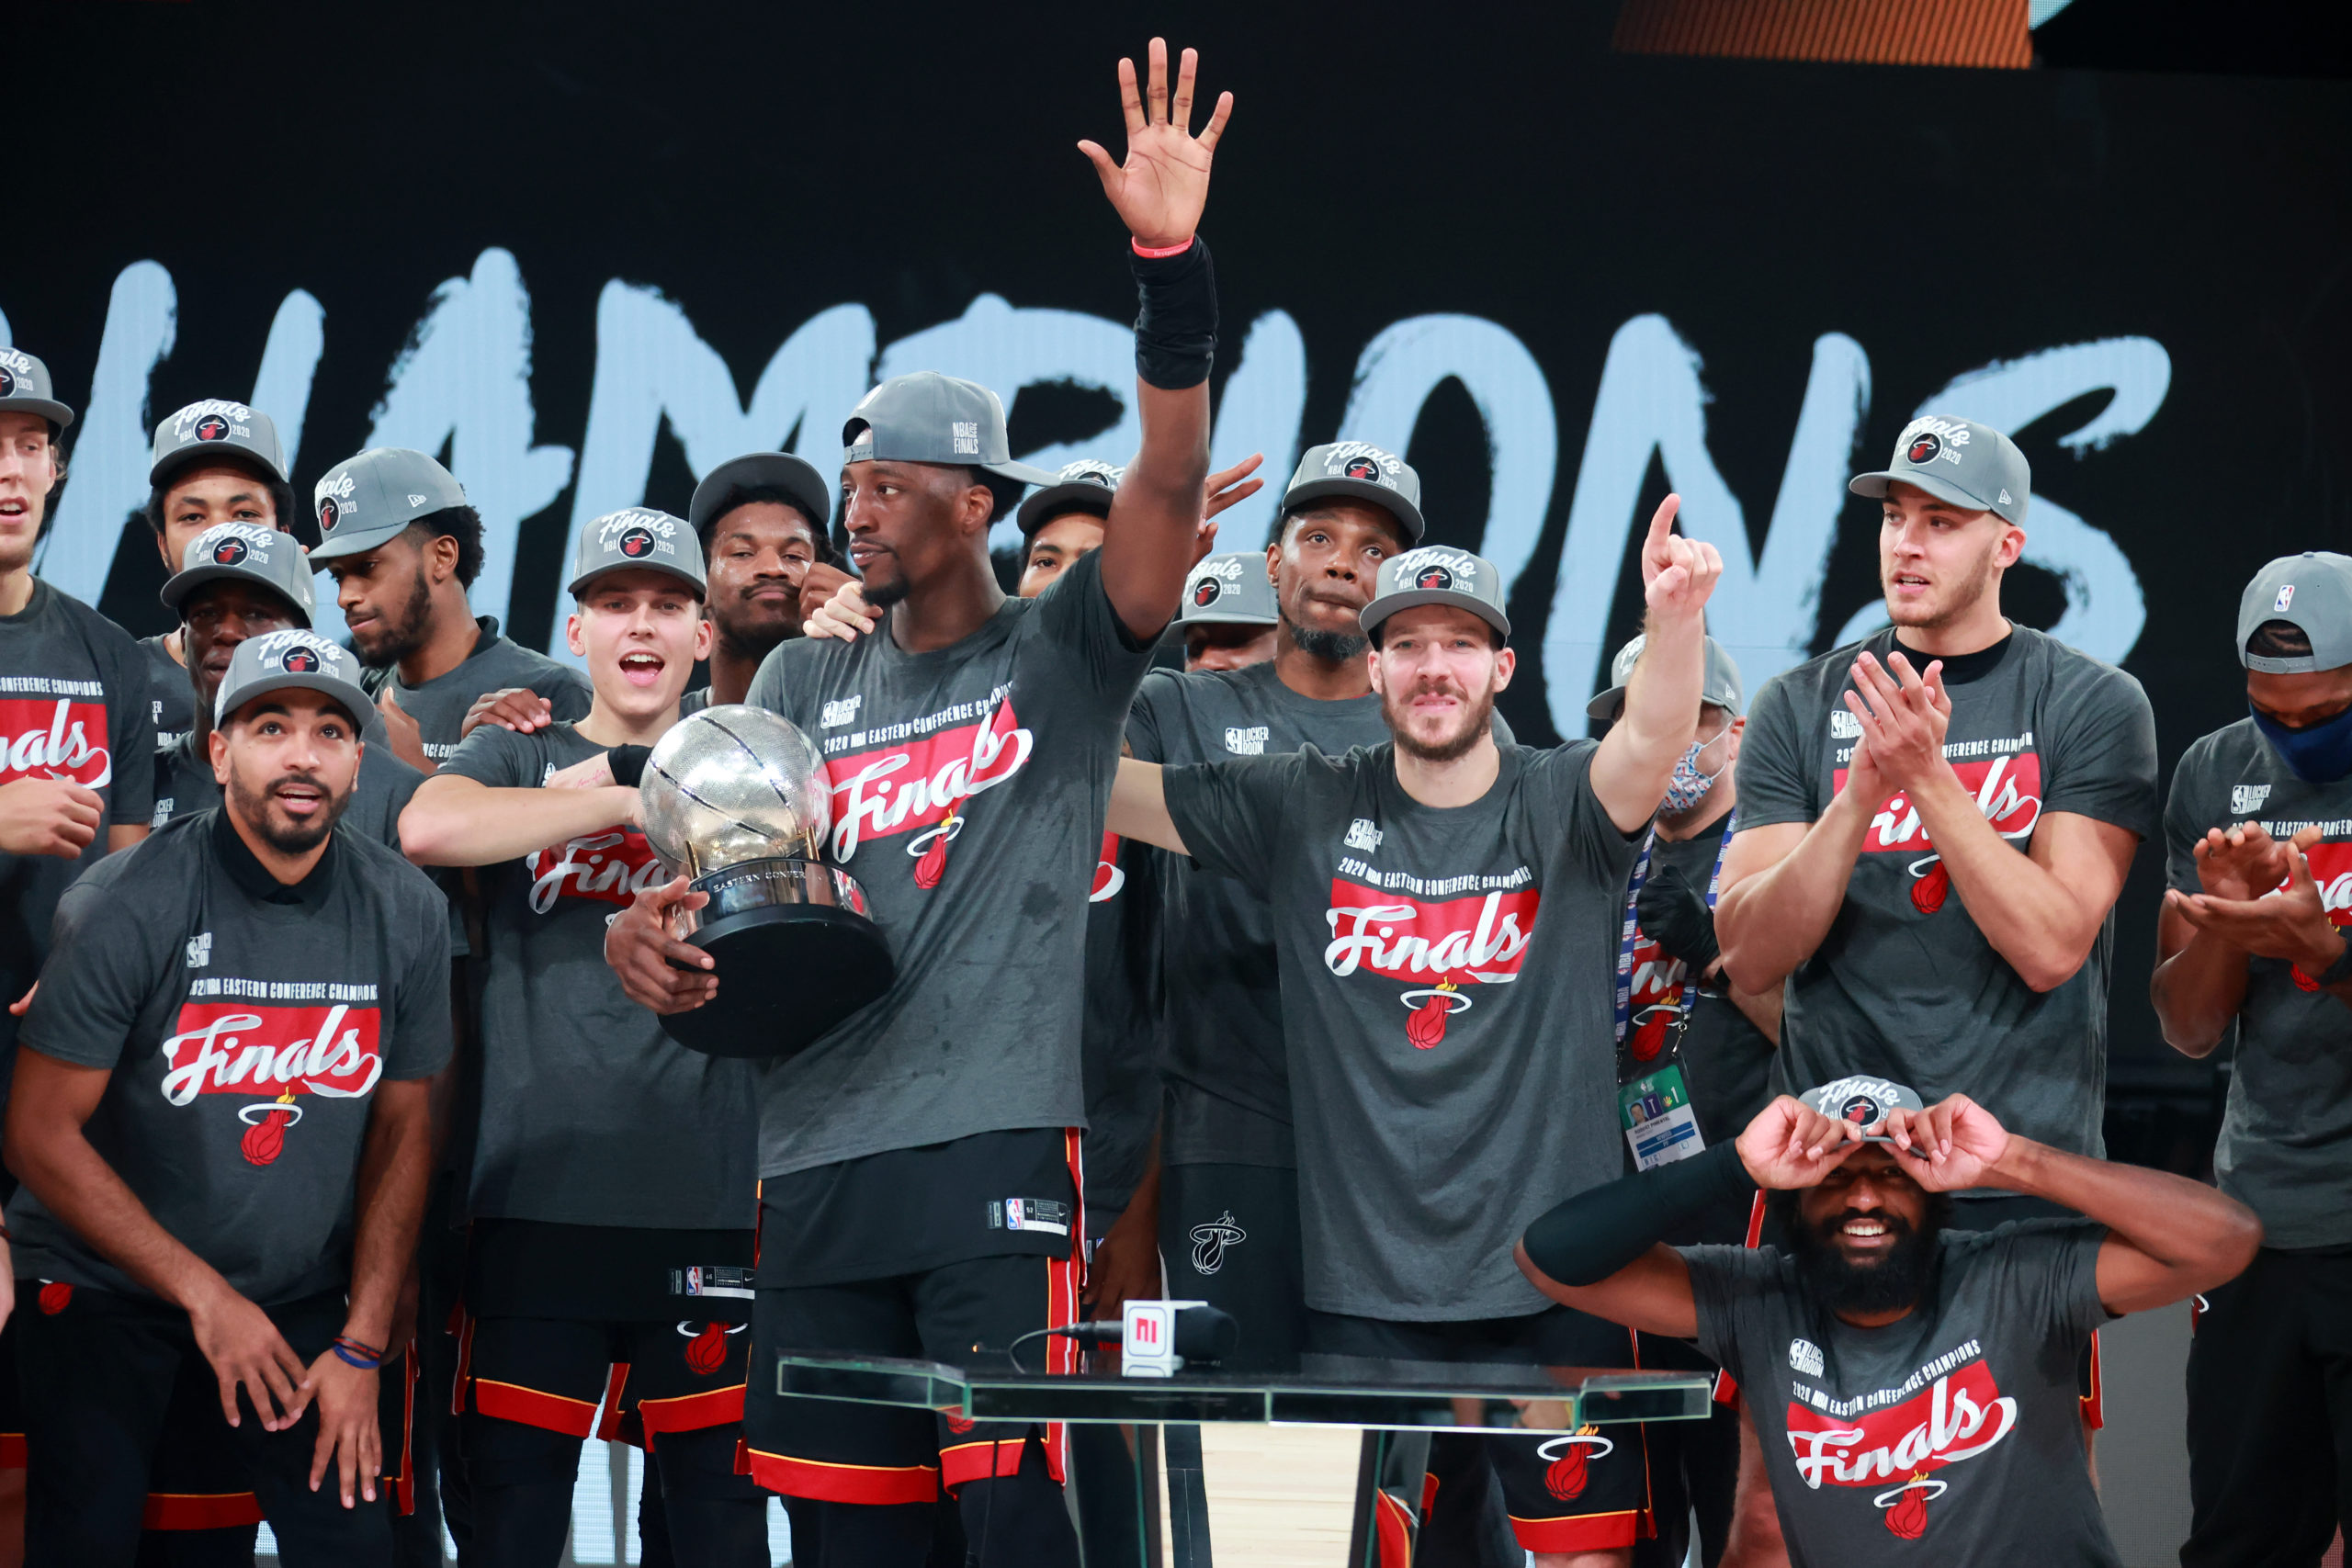 ¡A festejar Miami, que el Heat está en la Final de la NBA!